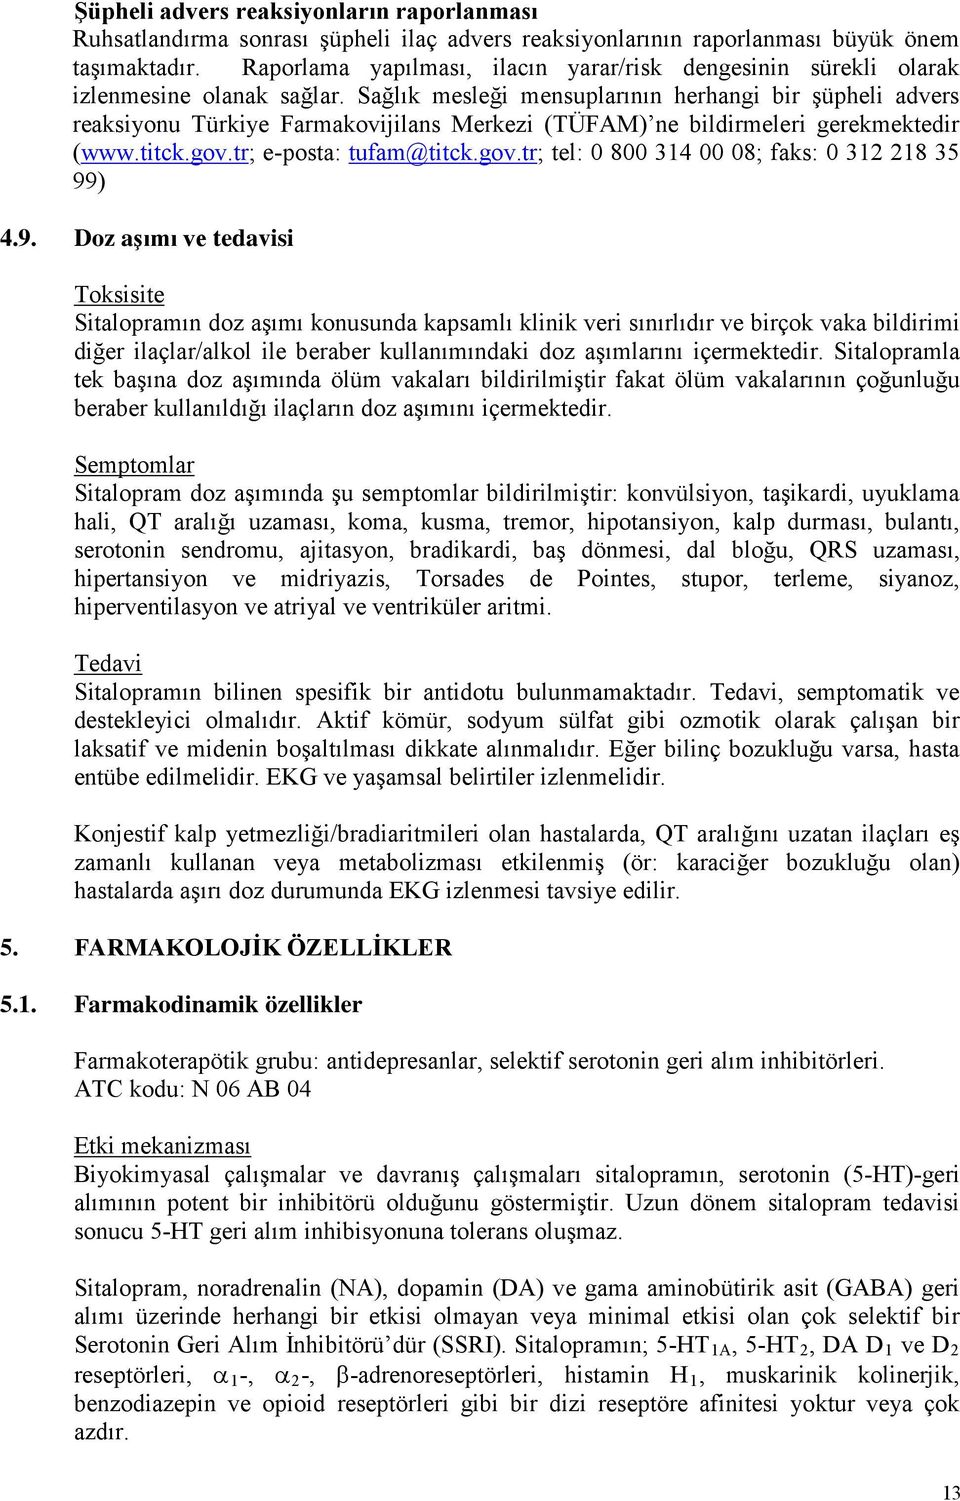 Sağlık mesleği mensuplarının herhangi bir şüpheli advers reaksiyonu Türkiye Farmakovijilans Merkezi (TÜFAM) ne bildirmeleri gerekmektedir (www.titck.gov.